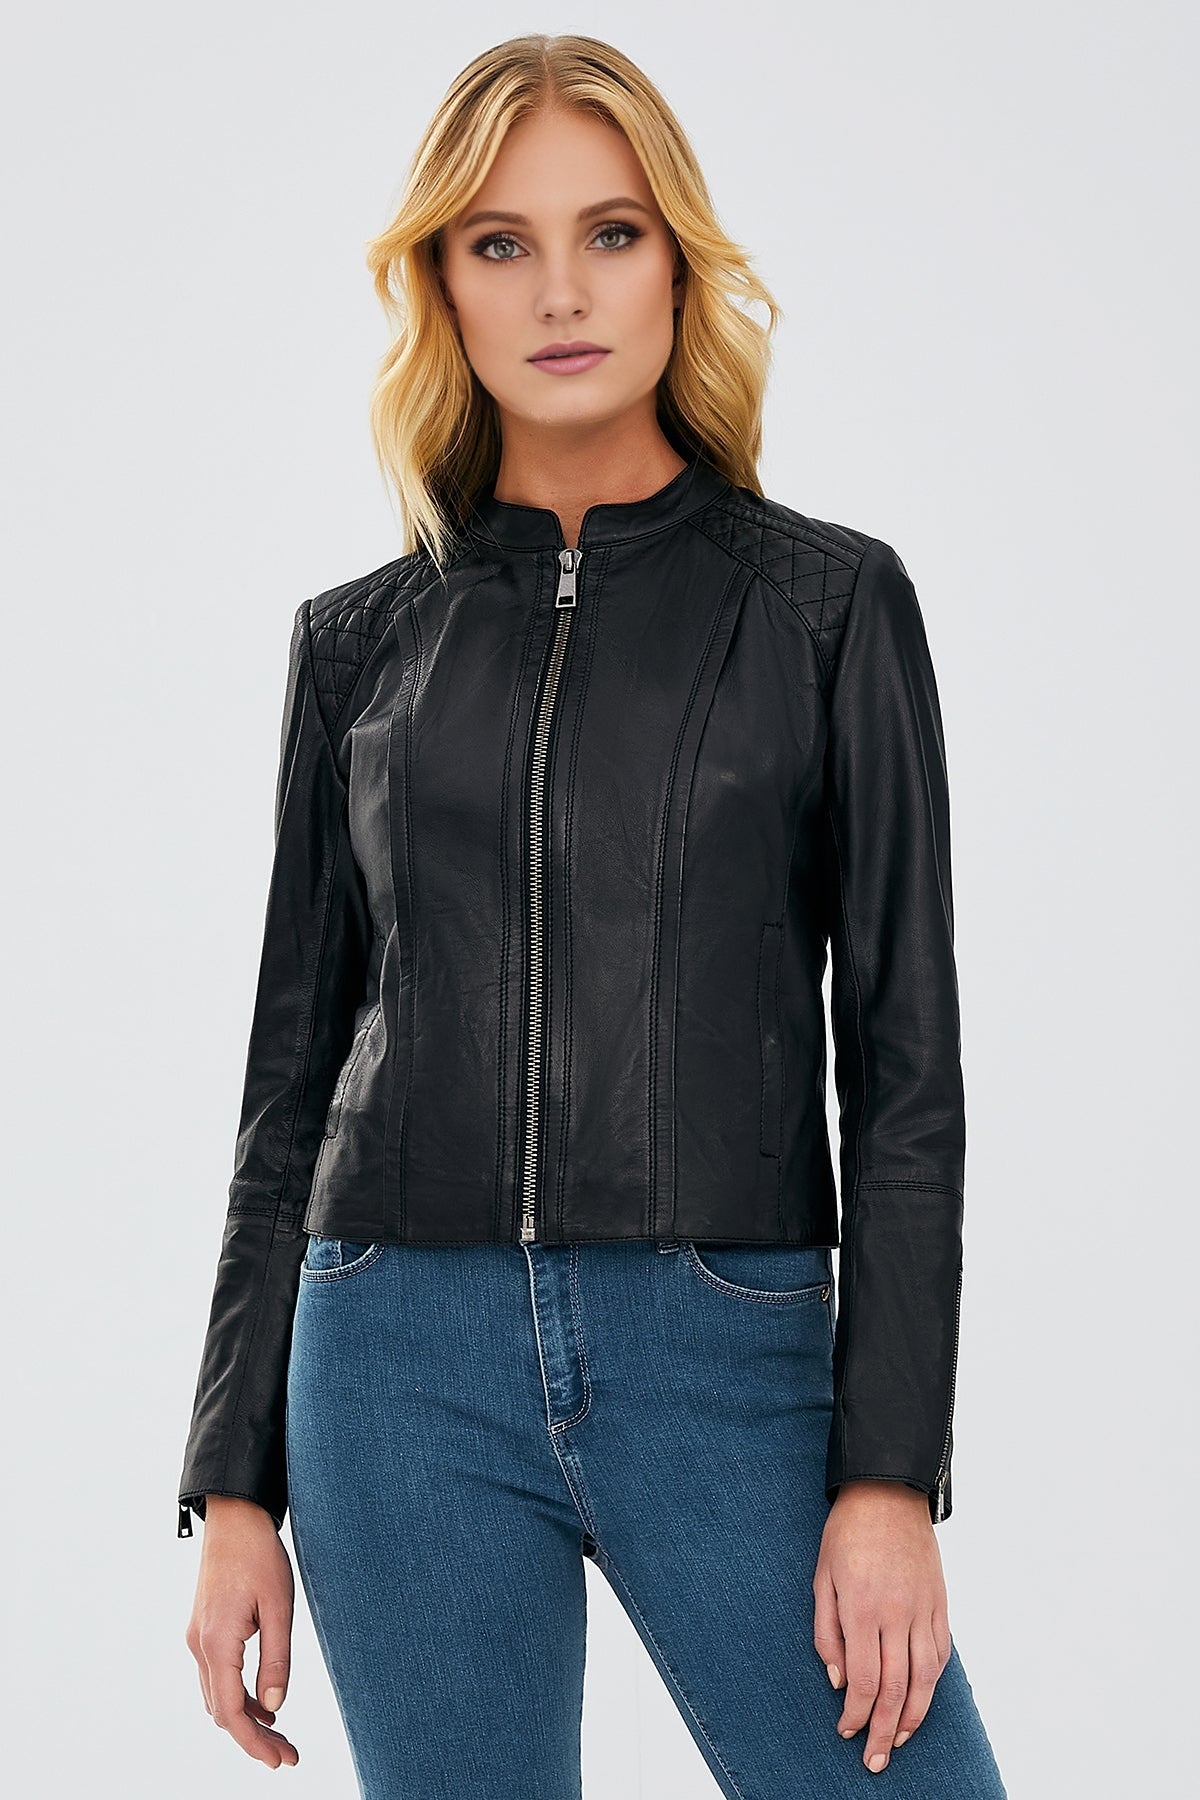 Paris Women's Black Leather Jacket